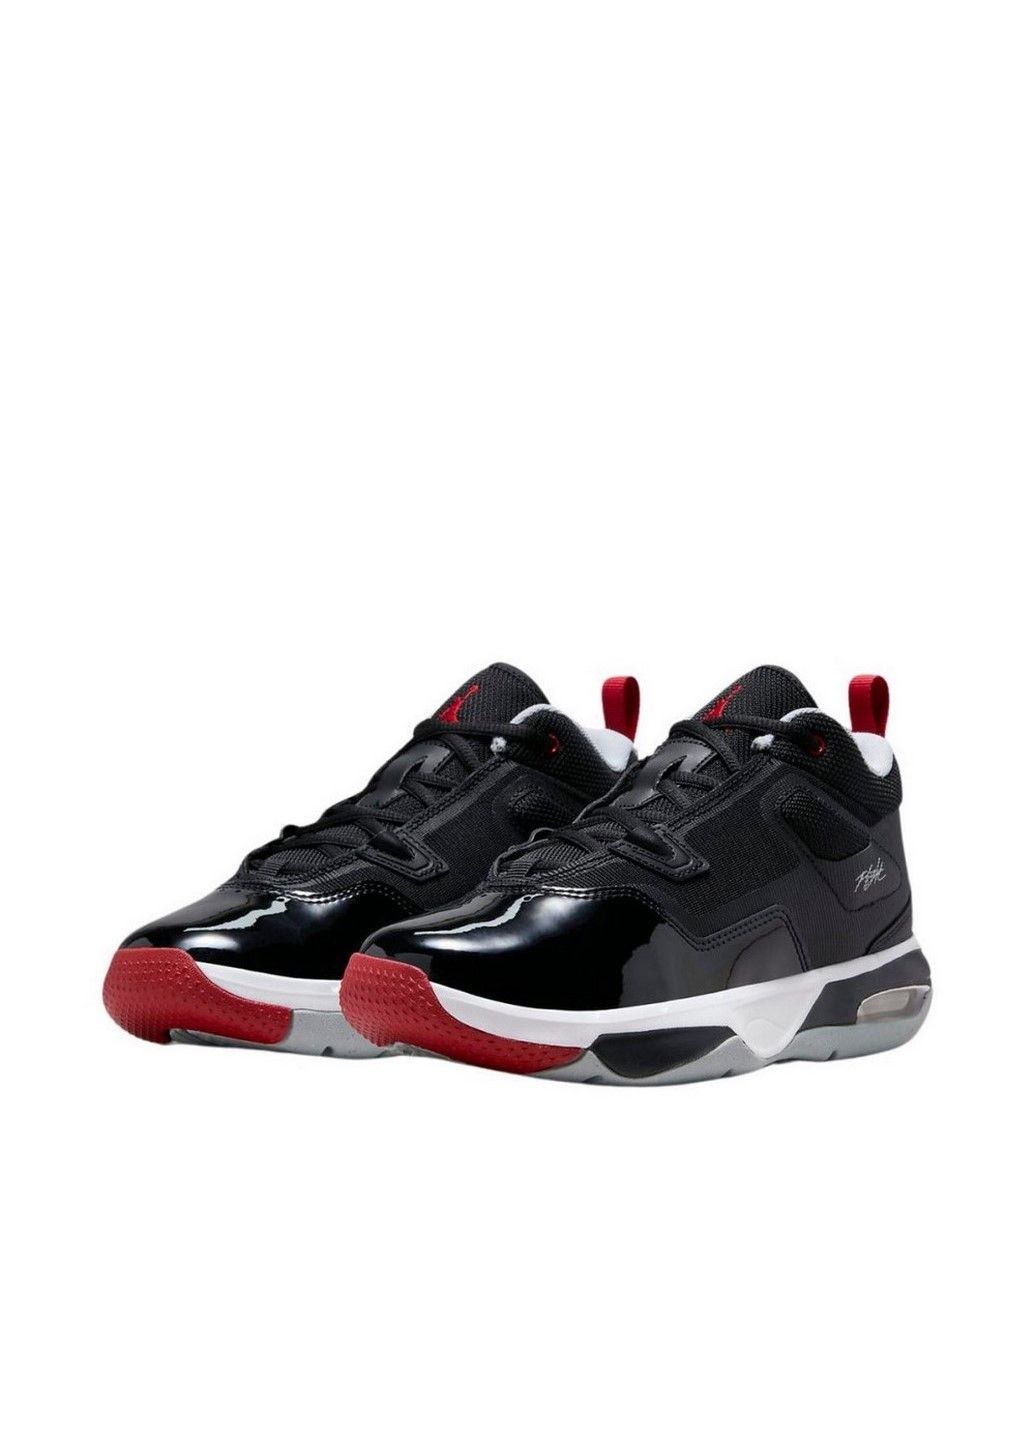 Чорні осінні кросівки stay loyal 3 (gs) fb9922-006 Jordan